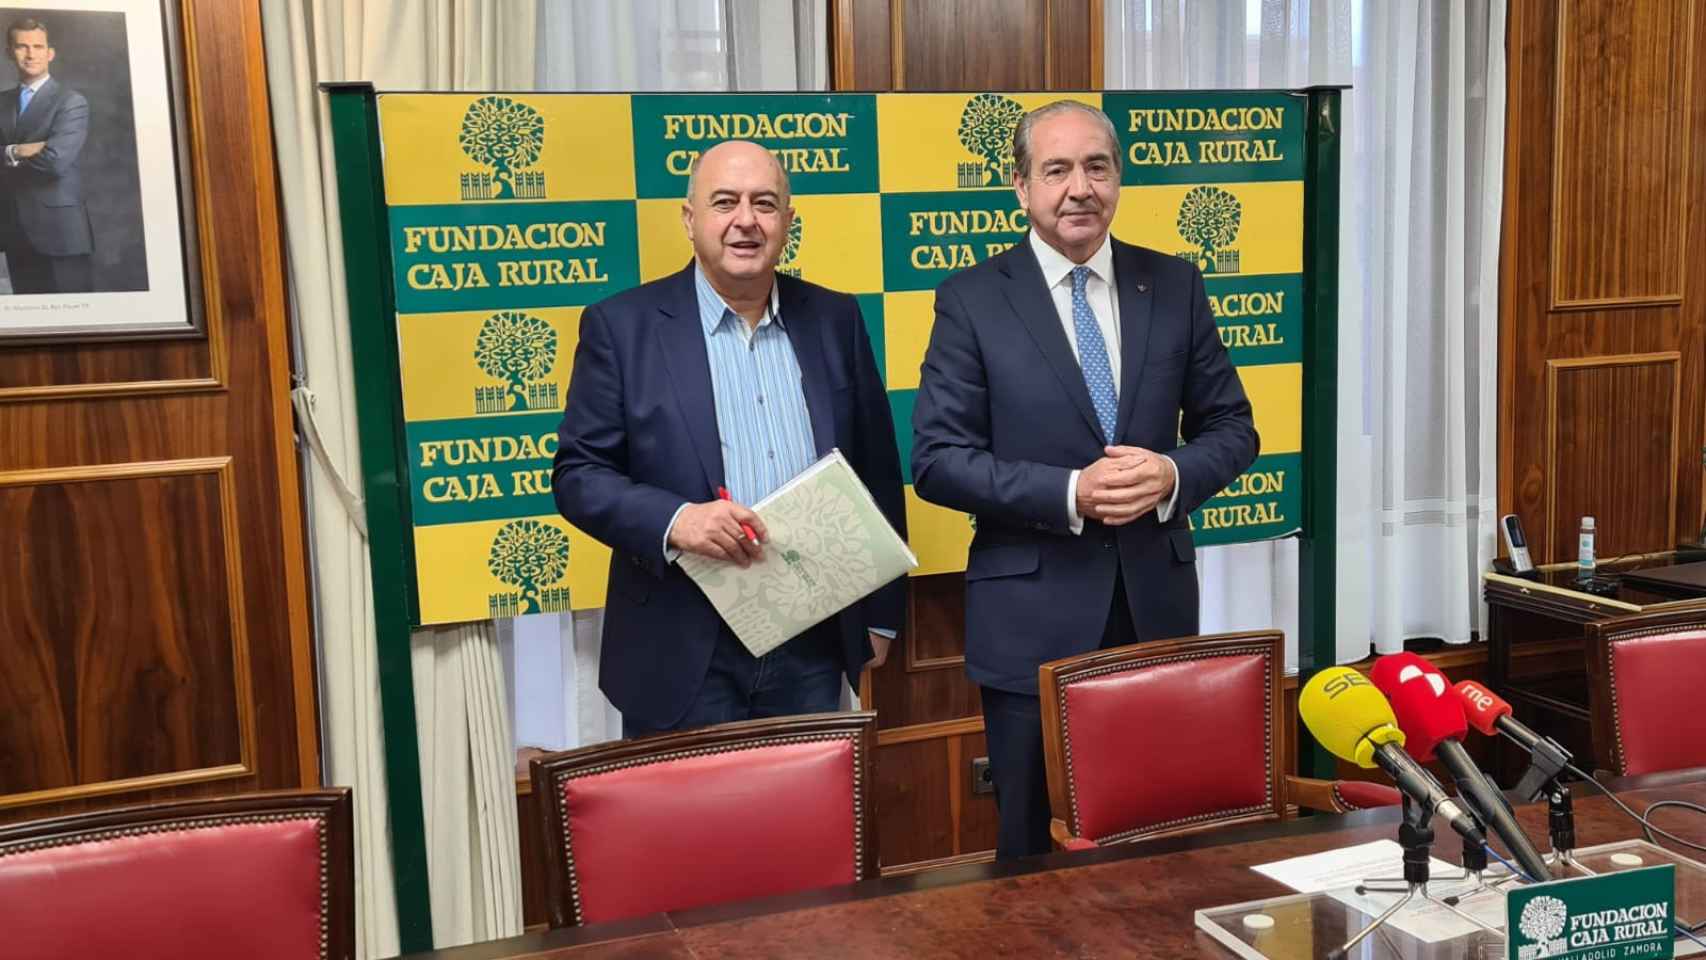 El secretario de la Fundación Caja Rural de Zamora, Feliciano Ferrero; y el director general de Caja Rural de Zamora, Cipriano García